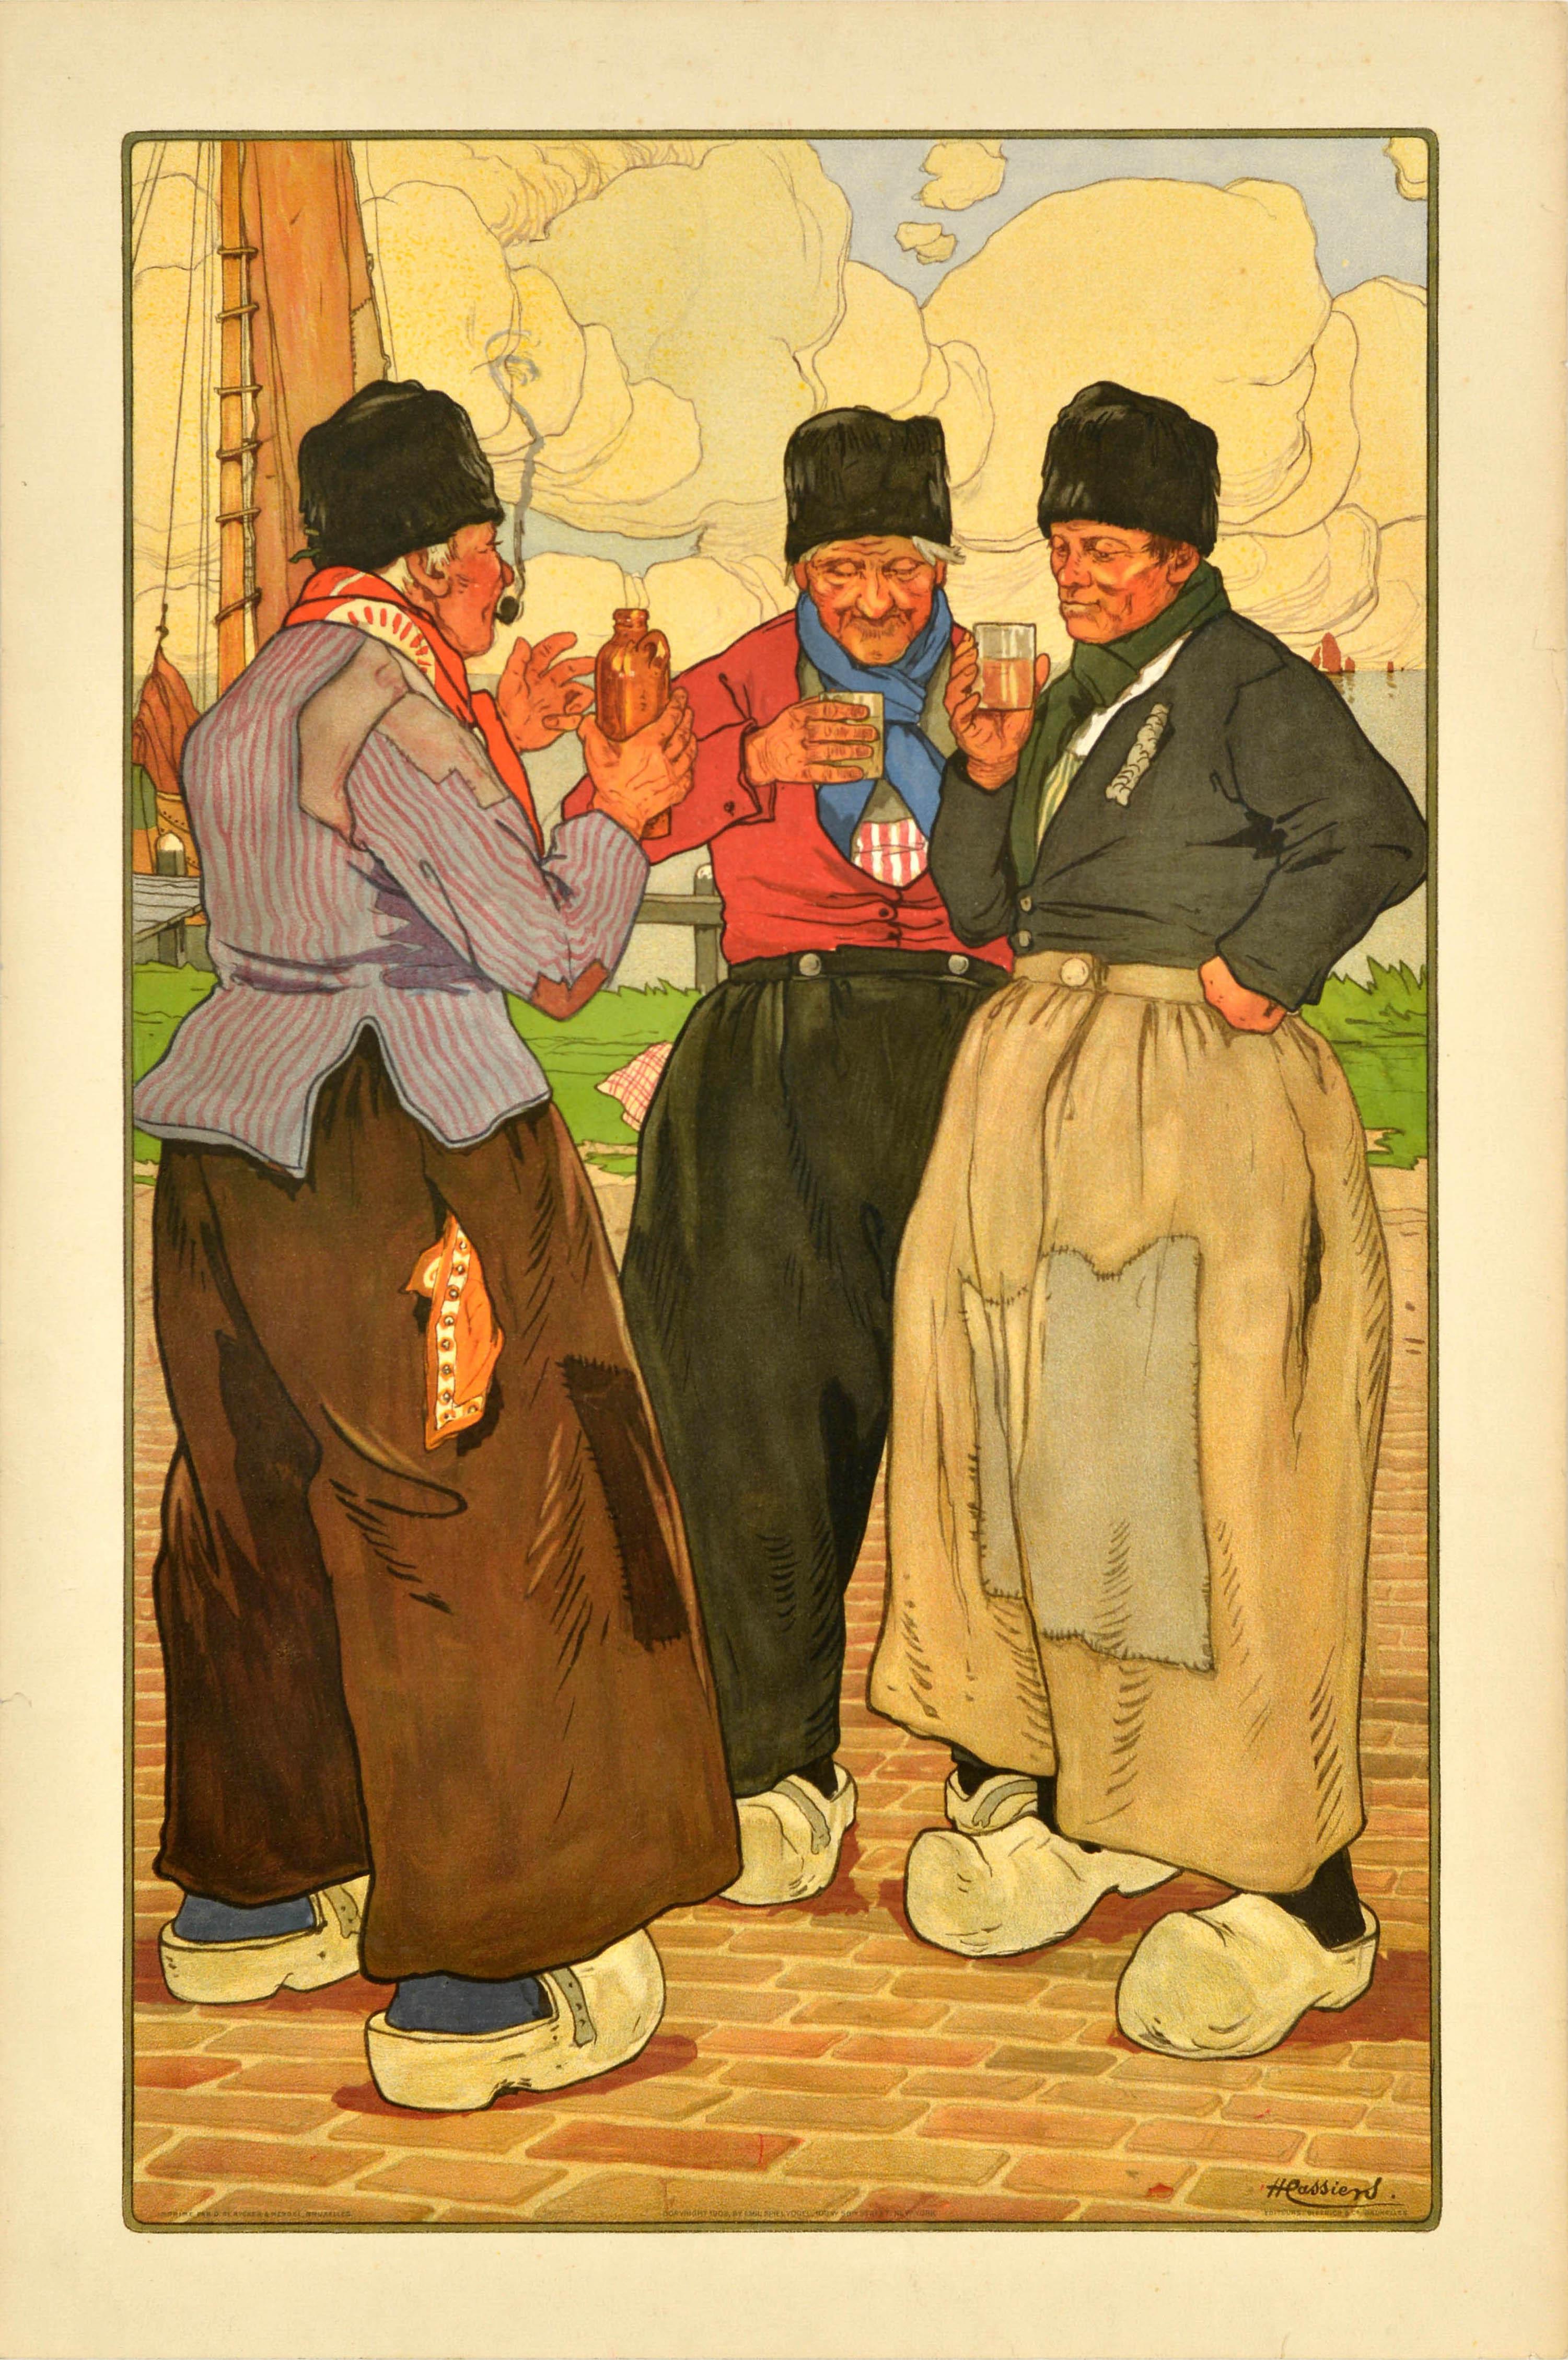 Originales antikes Reiseplakat für Belgien mit einer Illustration von Henri Cassiers (1858-1944), die drei Fischer in traditionellen Holzschuhen zeigt, die auf Kopfsteinpflaster einen Drink genießen. Einer raucht eine Pfeife und hält eine